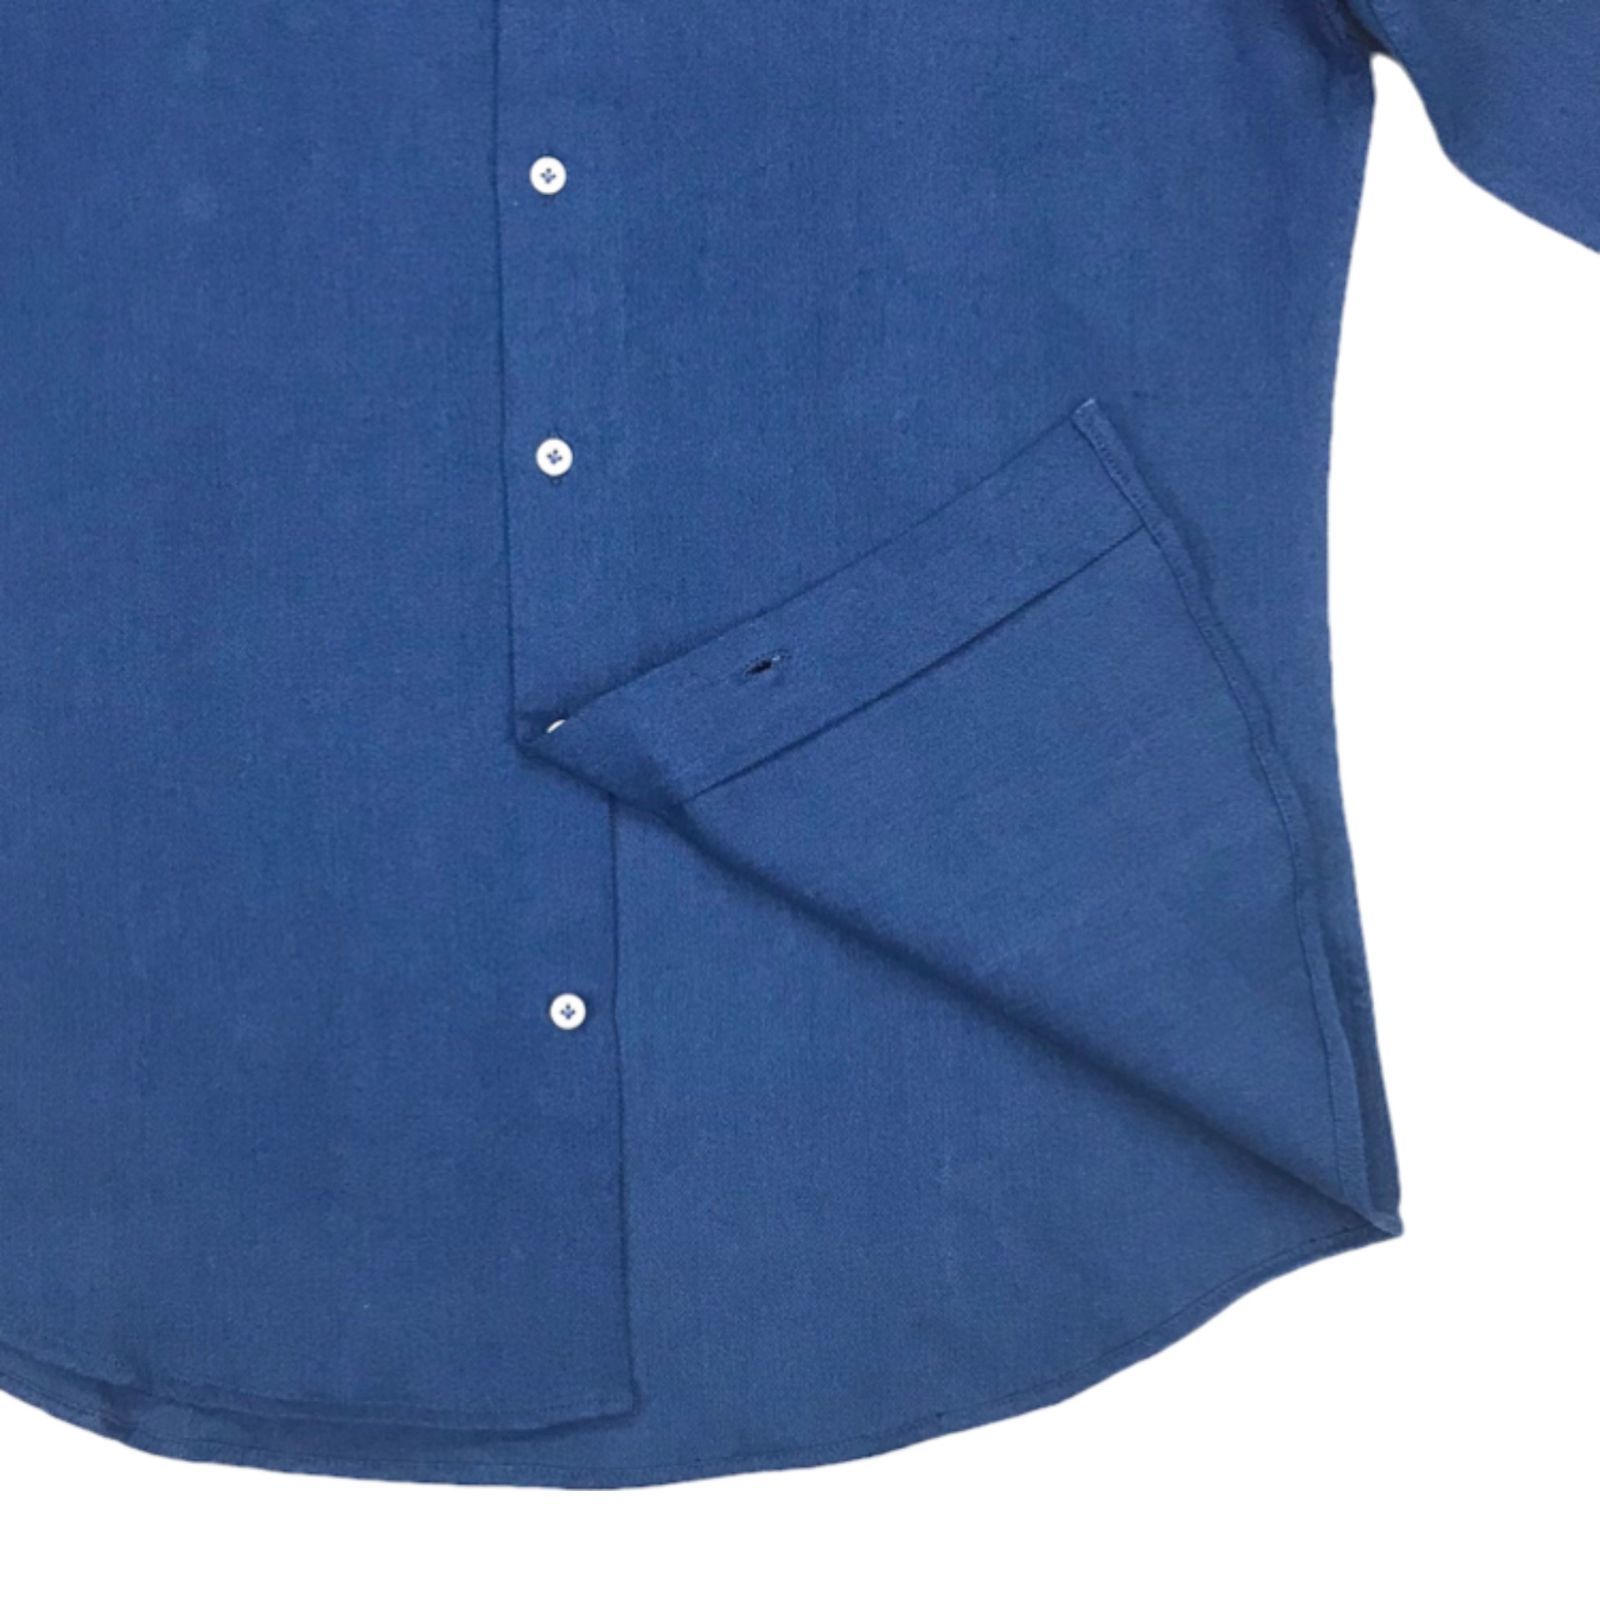 【新品★未使用】ロイヤルブルー オックスフォードクロス ホリゾンタルカラーシャツ